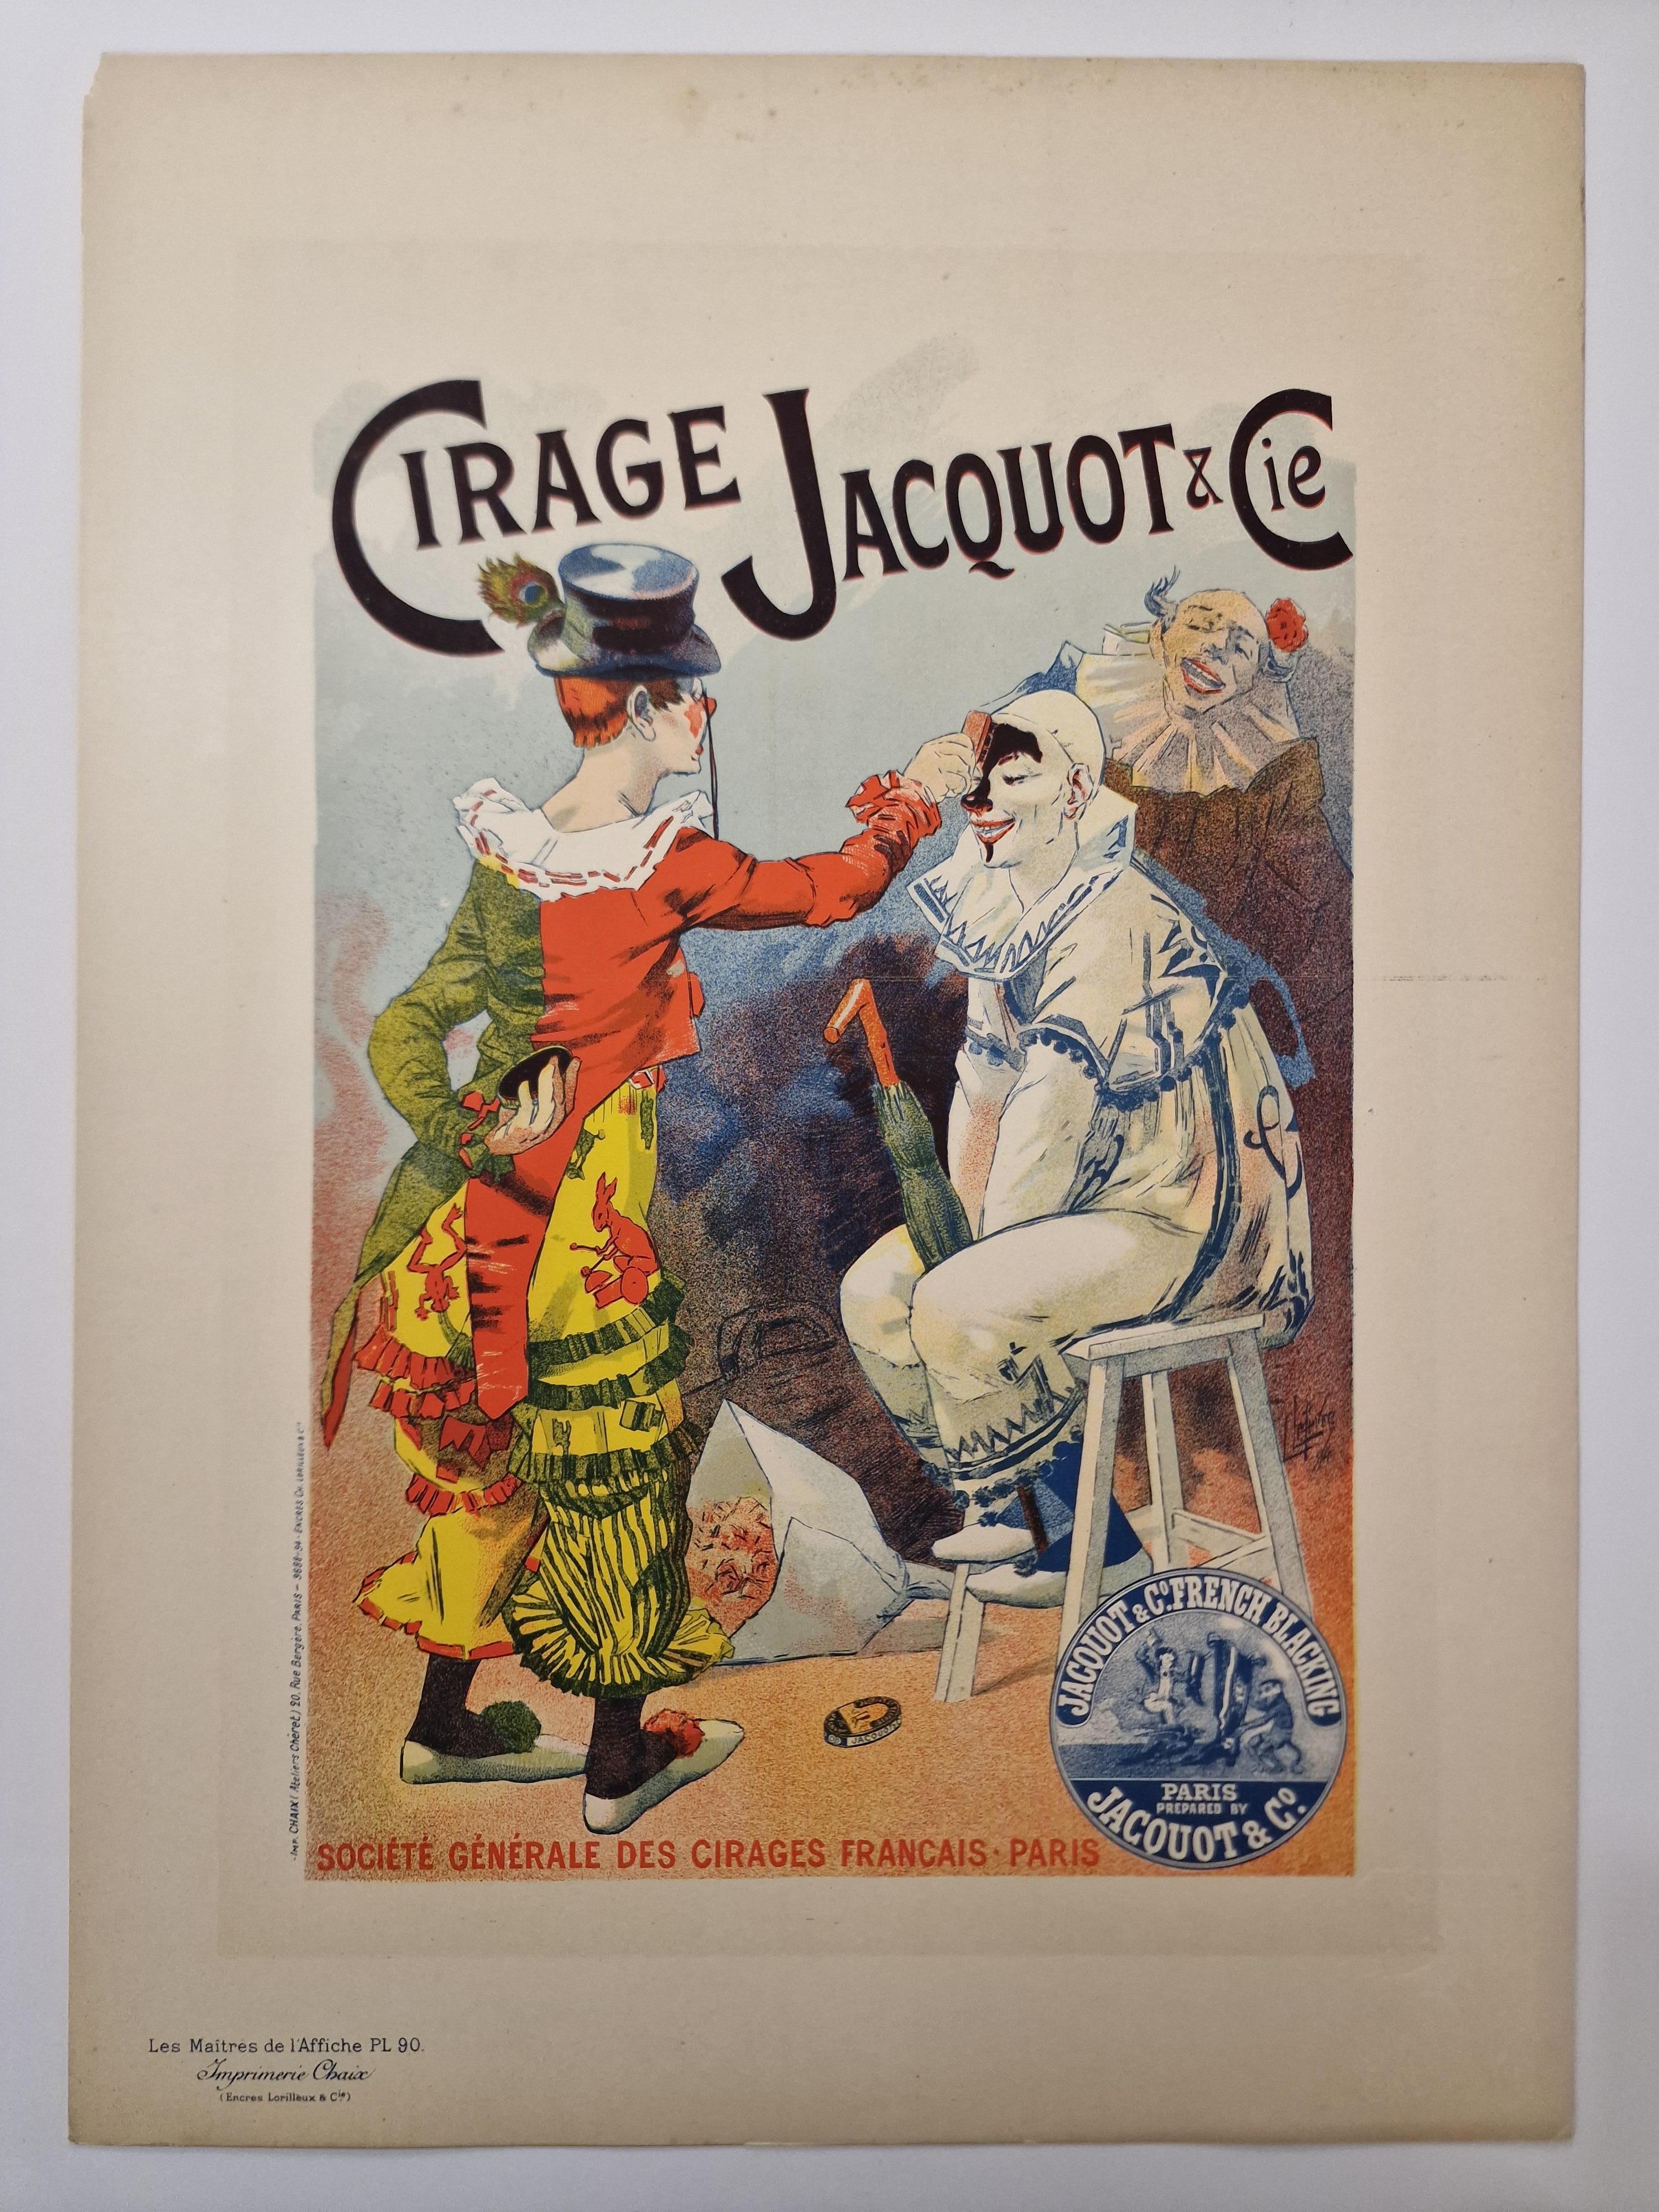 Cirage Jacquot et Cie. - Print by Lucien Lefevre